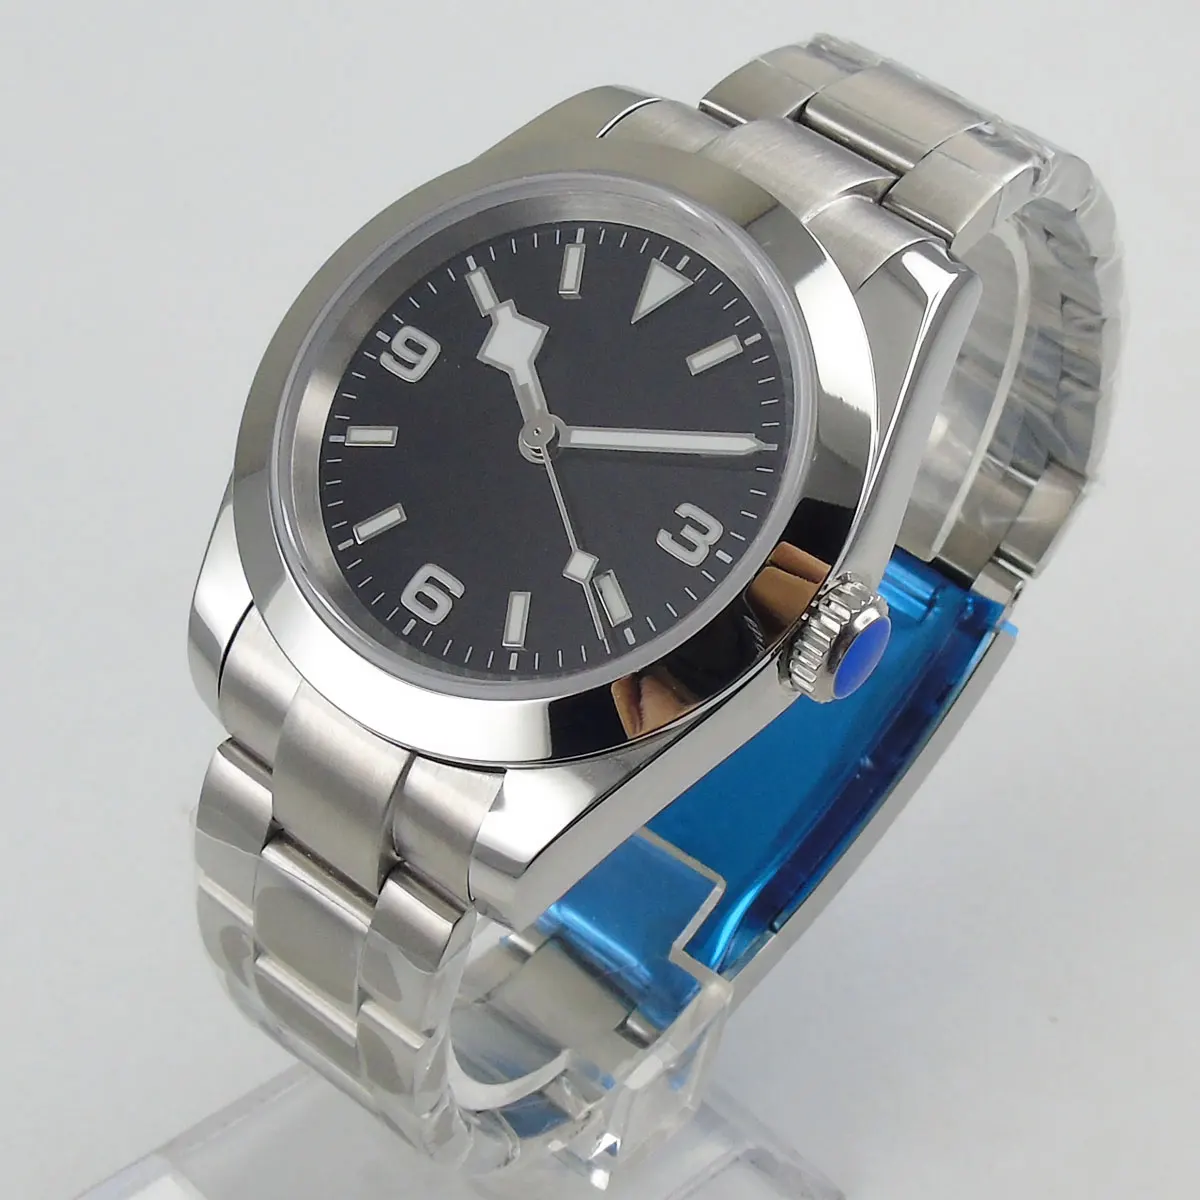 

Часы мужские черные стерильные с сапфировым стеклом, 36 мм, NH35A Miyota 8215